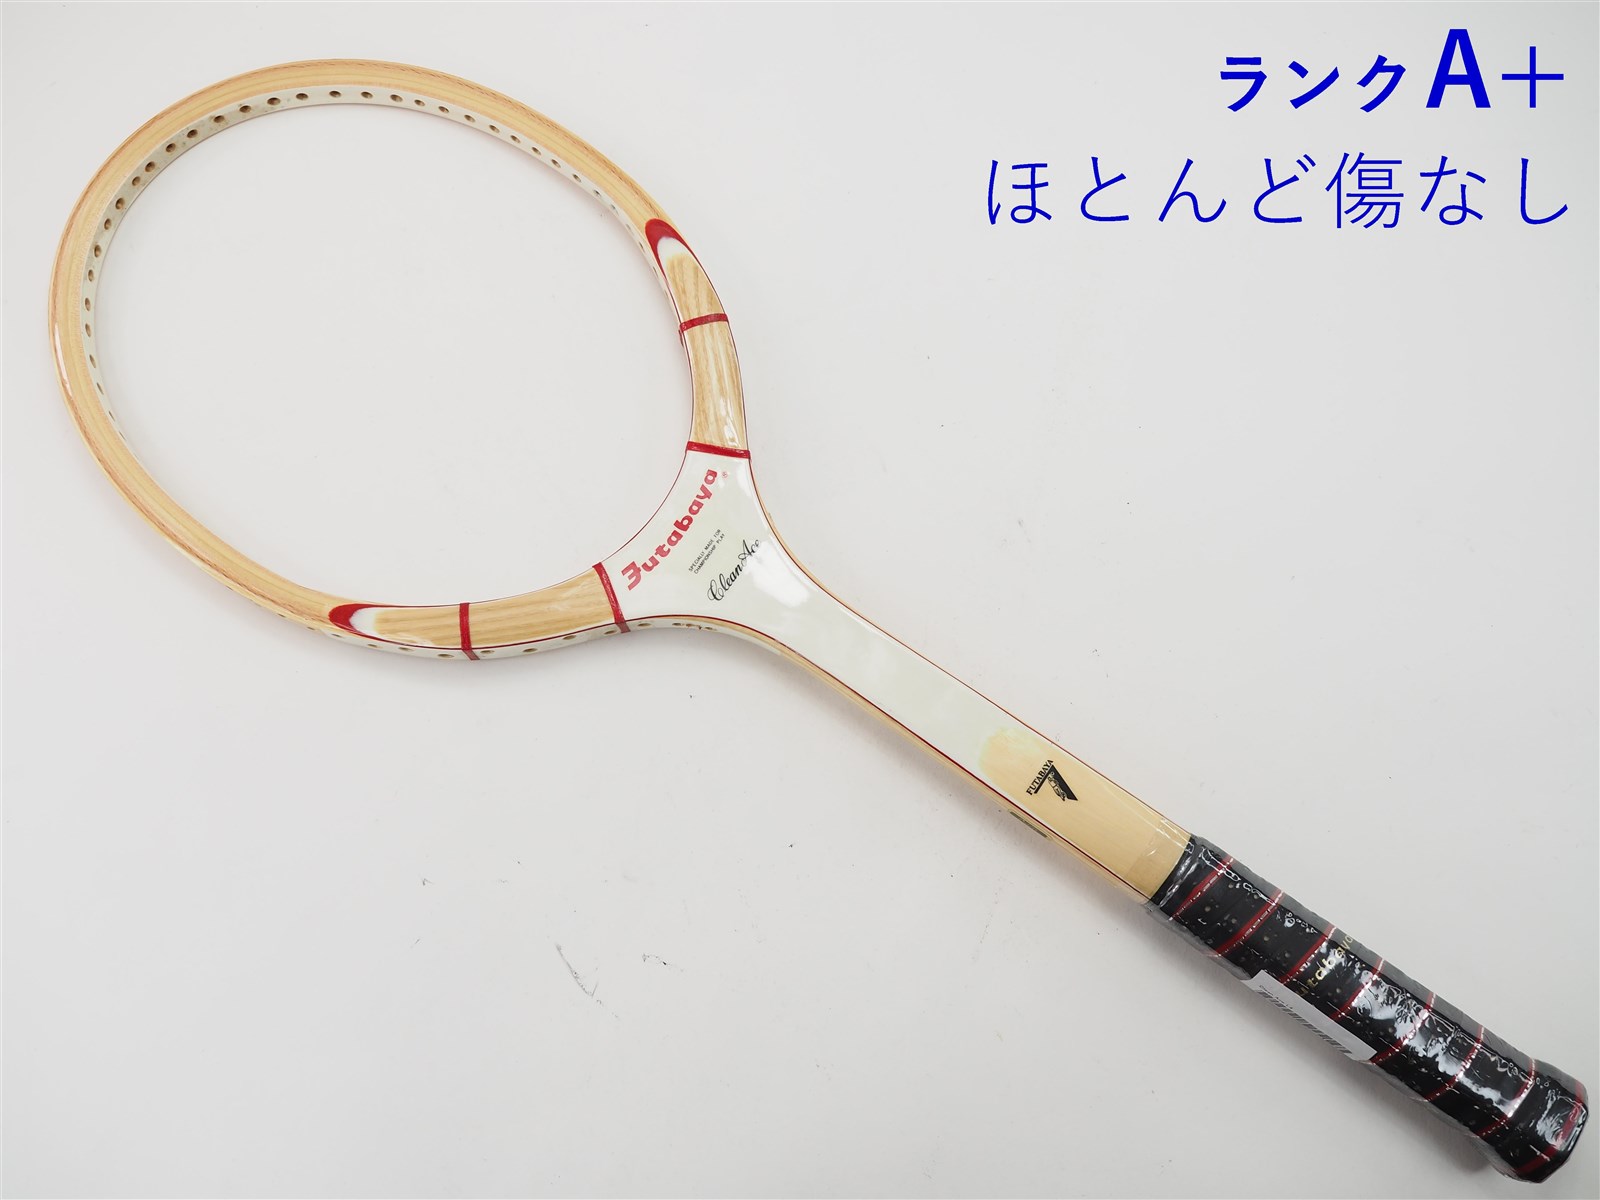 【中古】フタバヤ クリーンエースFUTABAYA Clean Ace(L4)【中古 テニスラケット】【送料無料】